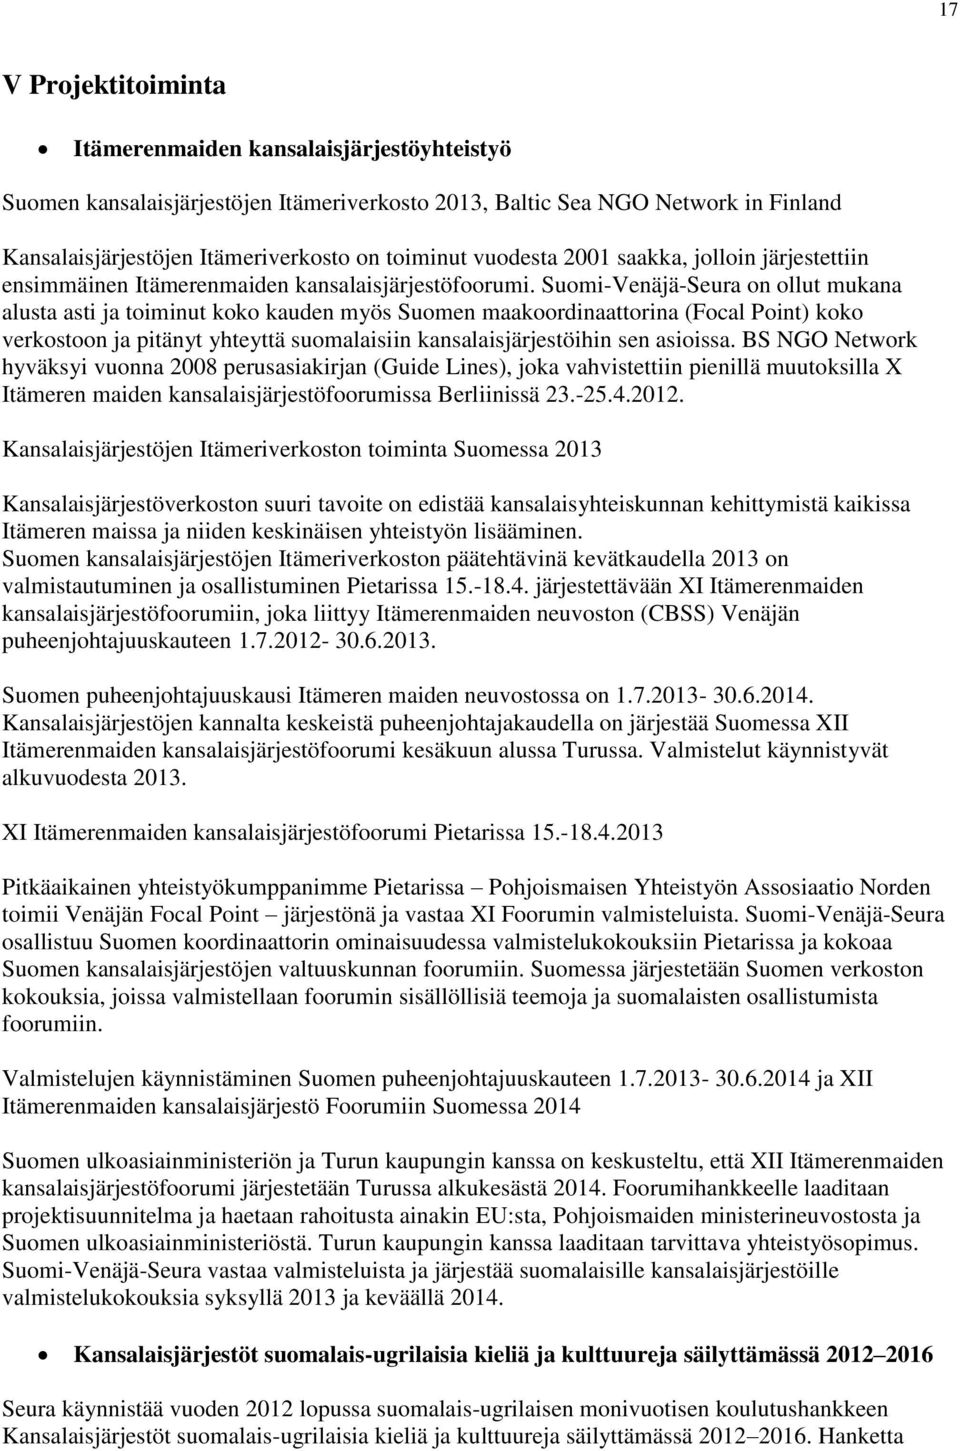 Suomi-Venäjä-Seura on ollut mukana alusta asti ja toiminut koko kauden myös Suomen maakoordinaattorina (Focal Point) koko verkostoon ja pitänyt yhteyttä suomalaisiin kansalaisjärjestöihin sen